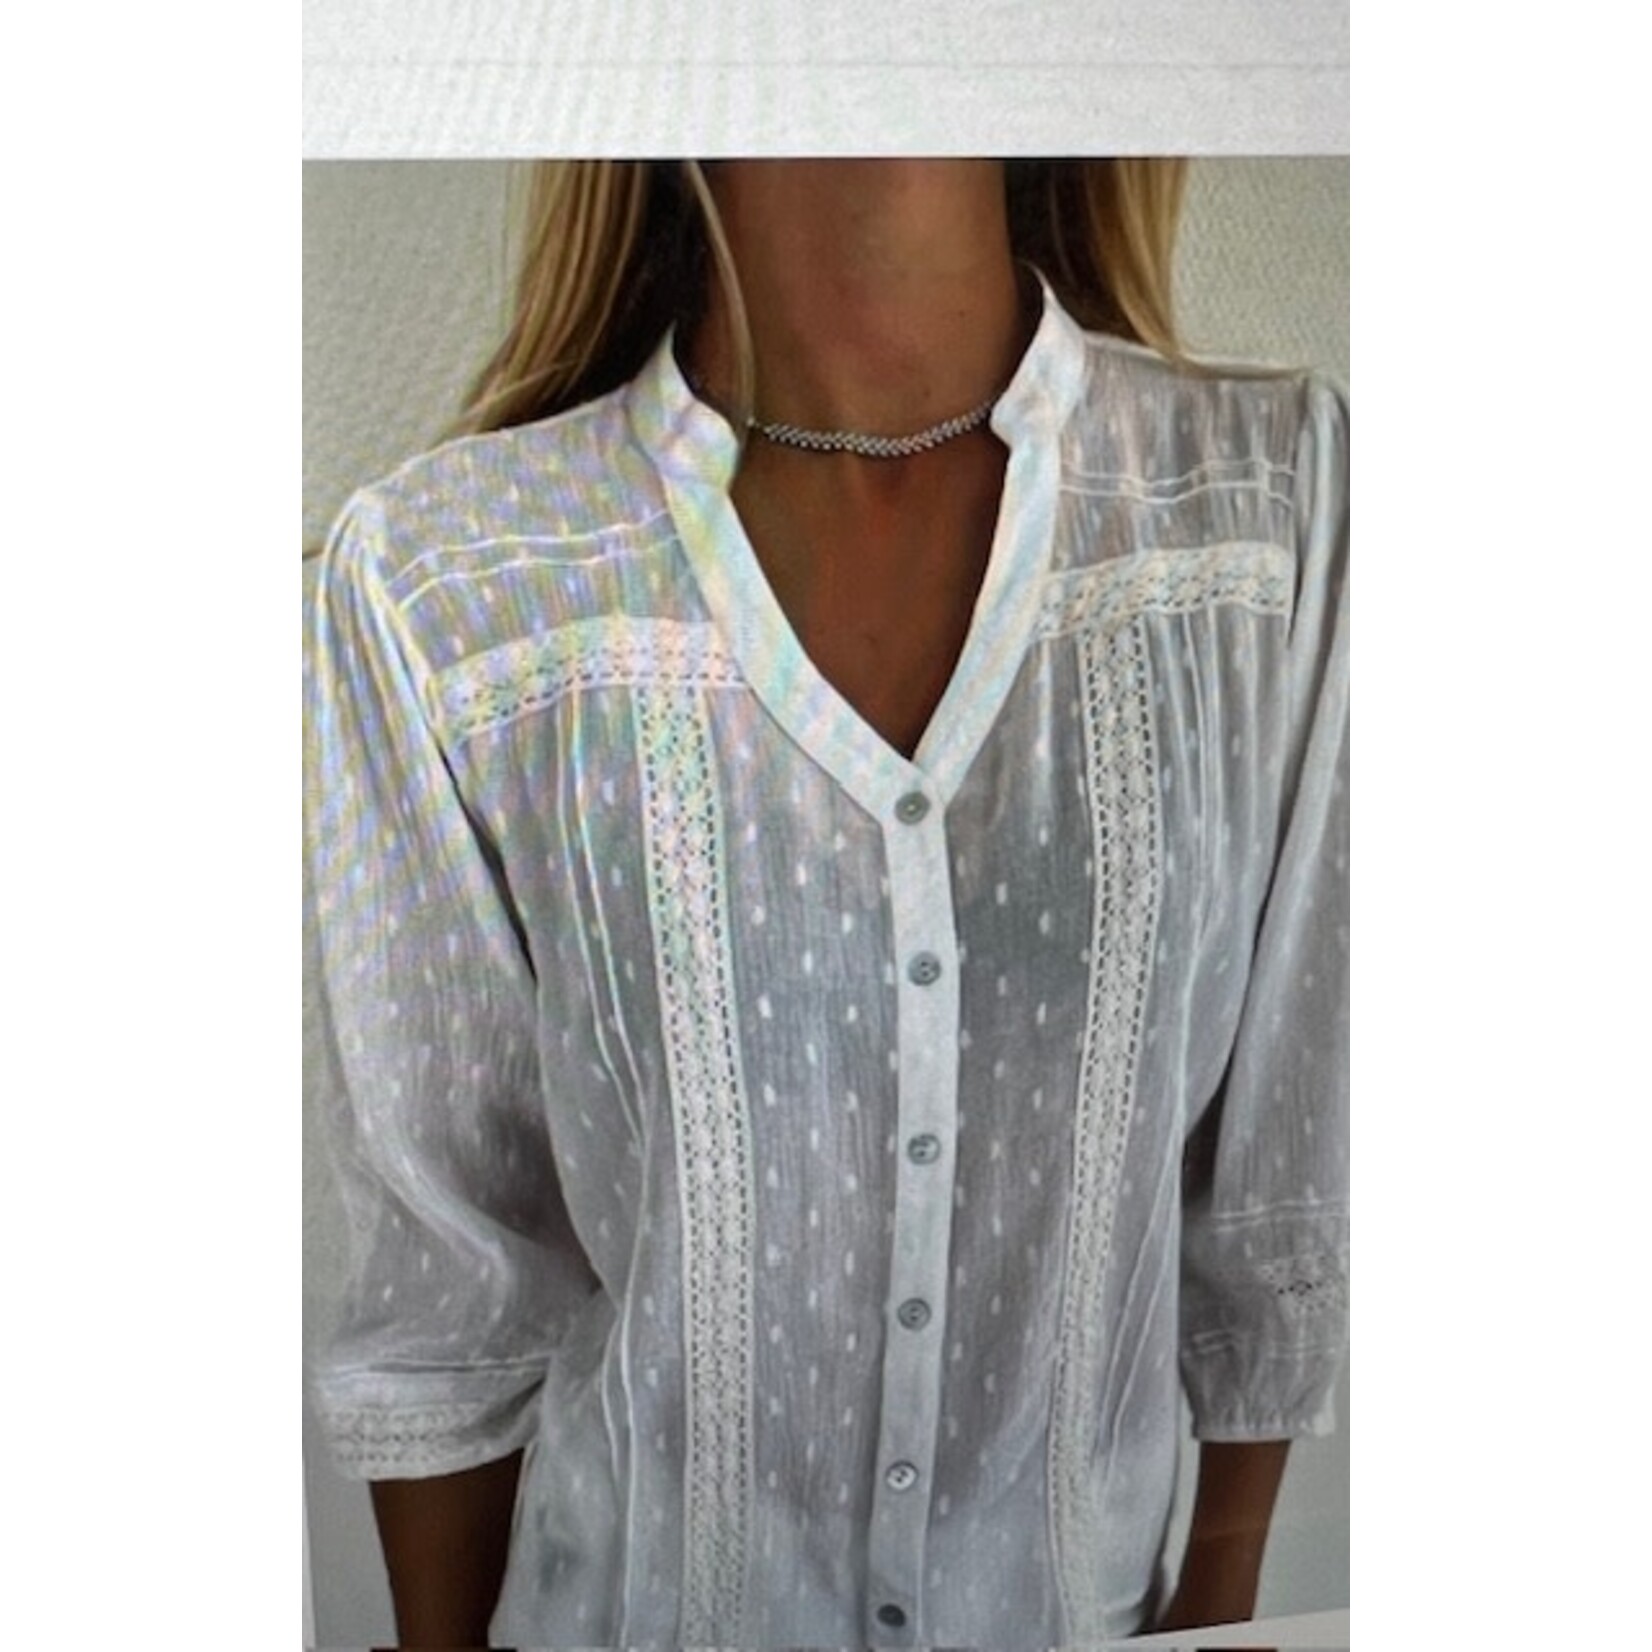 Bindi Bindi bs4 631 lace blouse